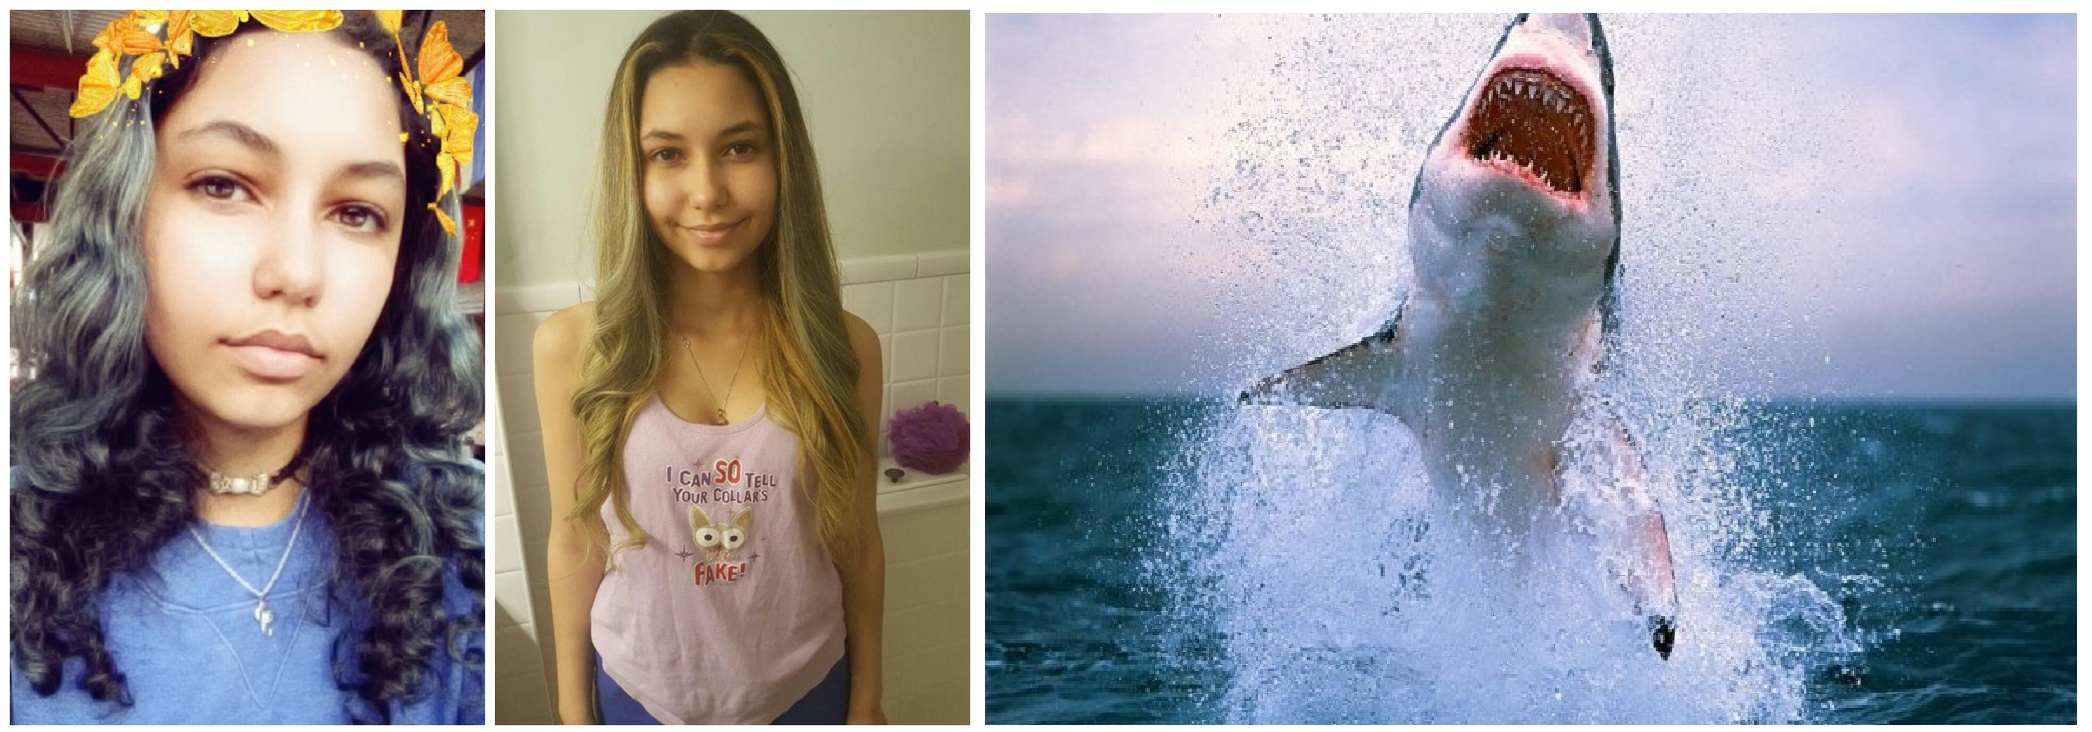 美国19岁少女Paige Winter遭鲨鱼袭击截肢保命 故事搬上国家地理频道